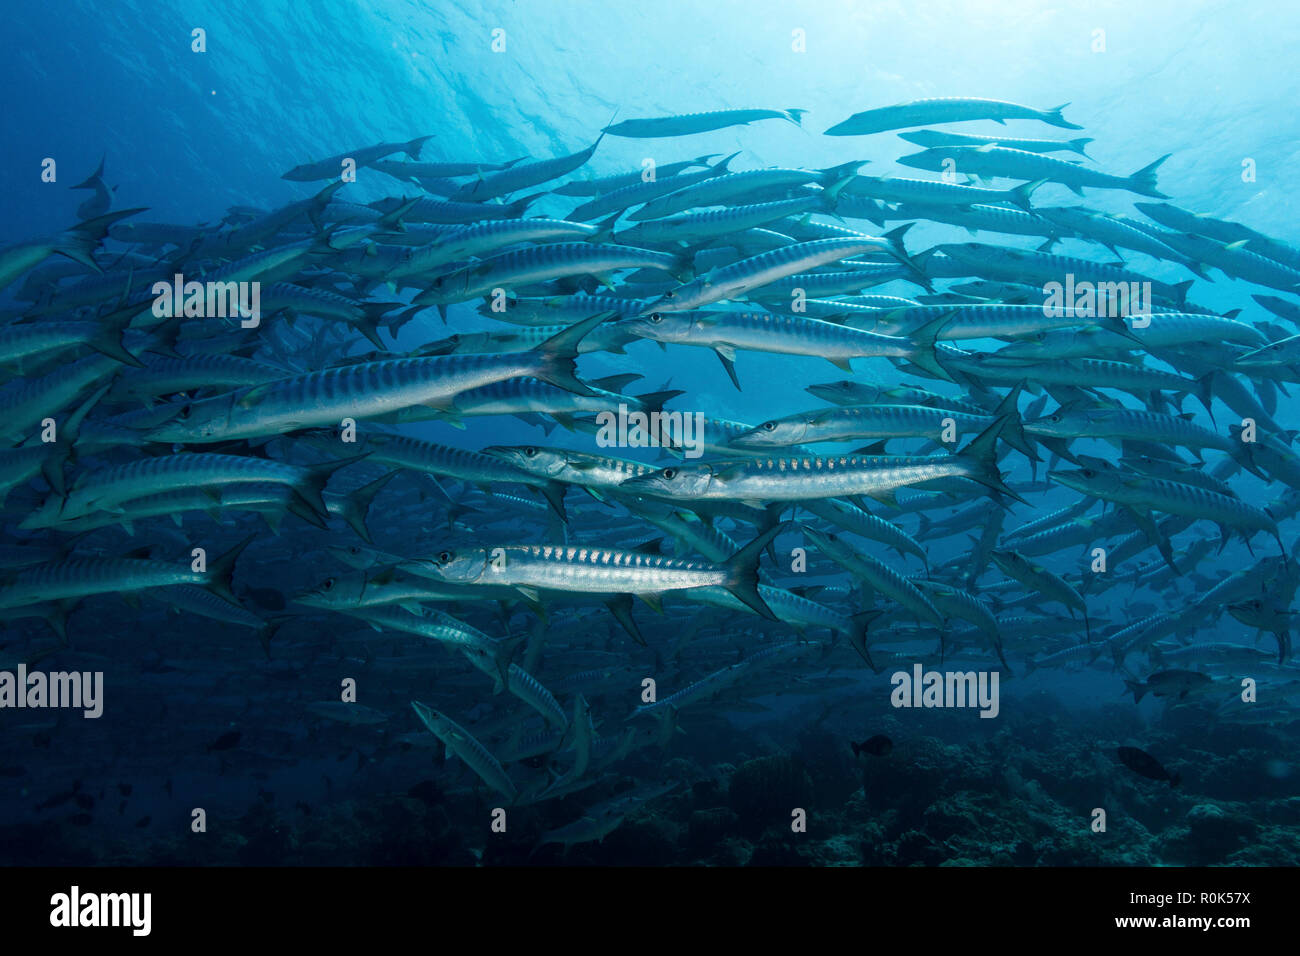 School of barracudas in the waters of Sipadan, Malaysia. Stock Photo